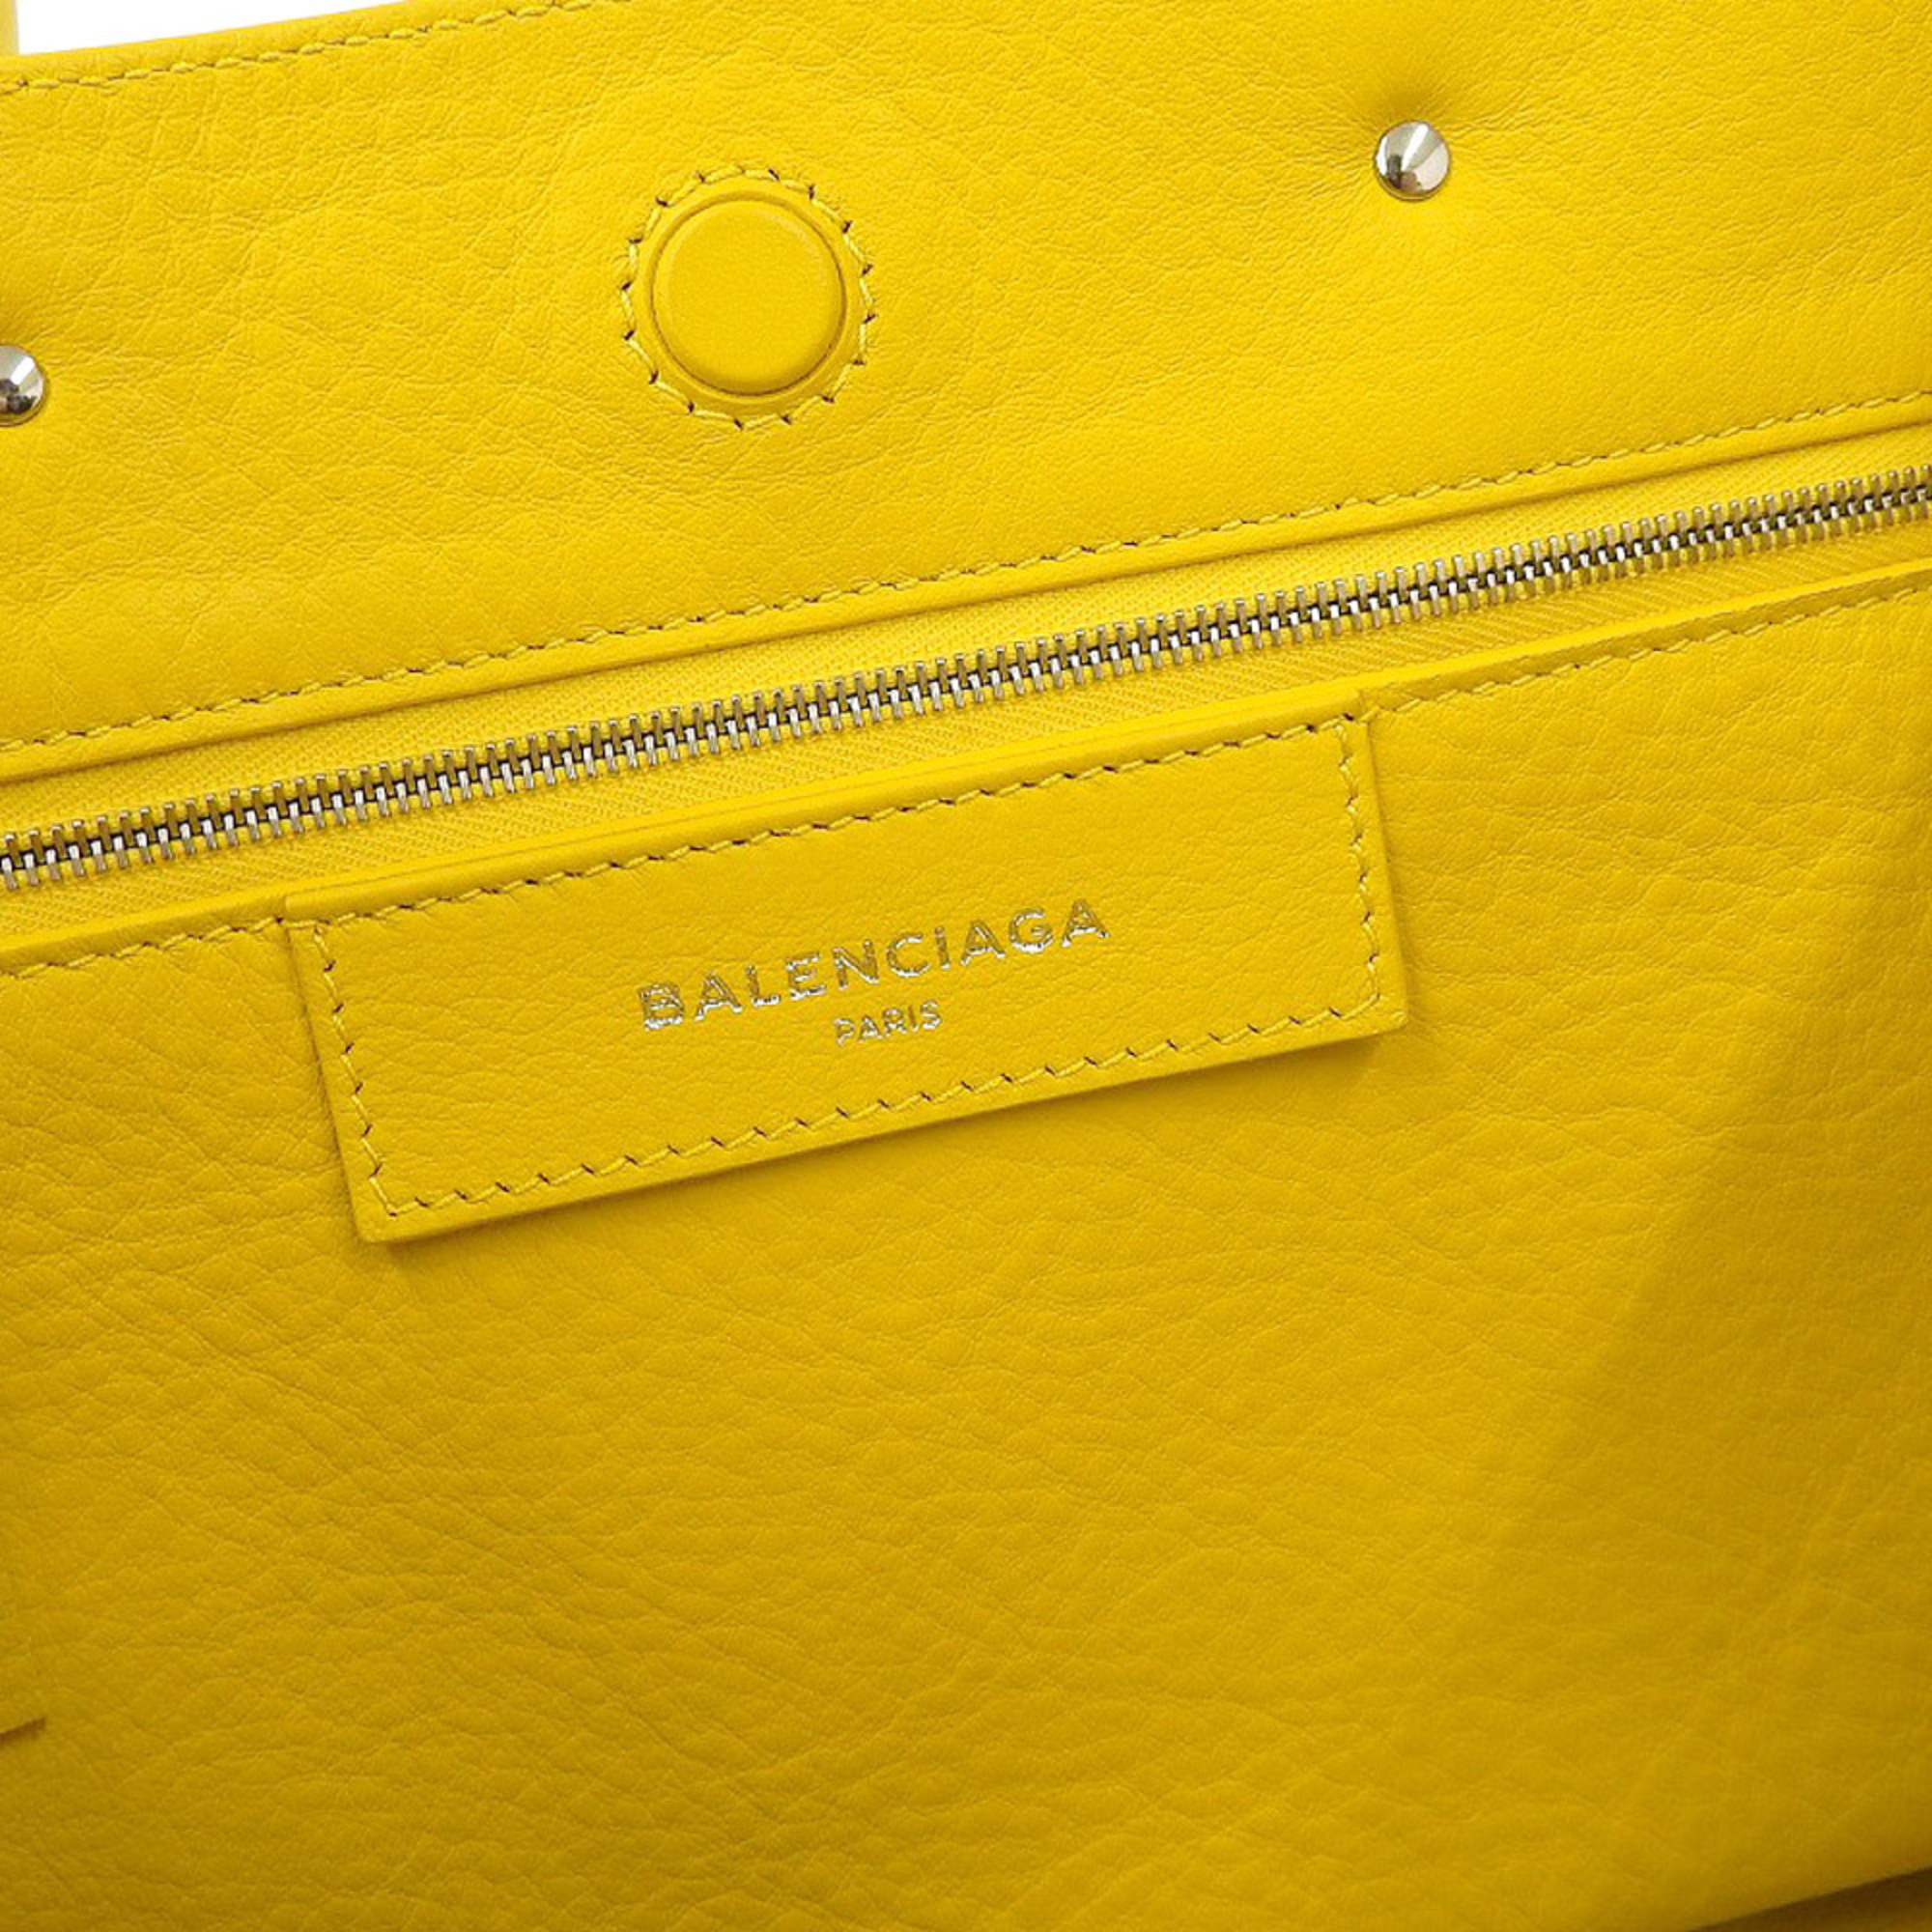 Balenciaga BALENCIAGA paper mini 2WAY bag leather yellow 370926